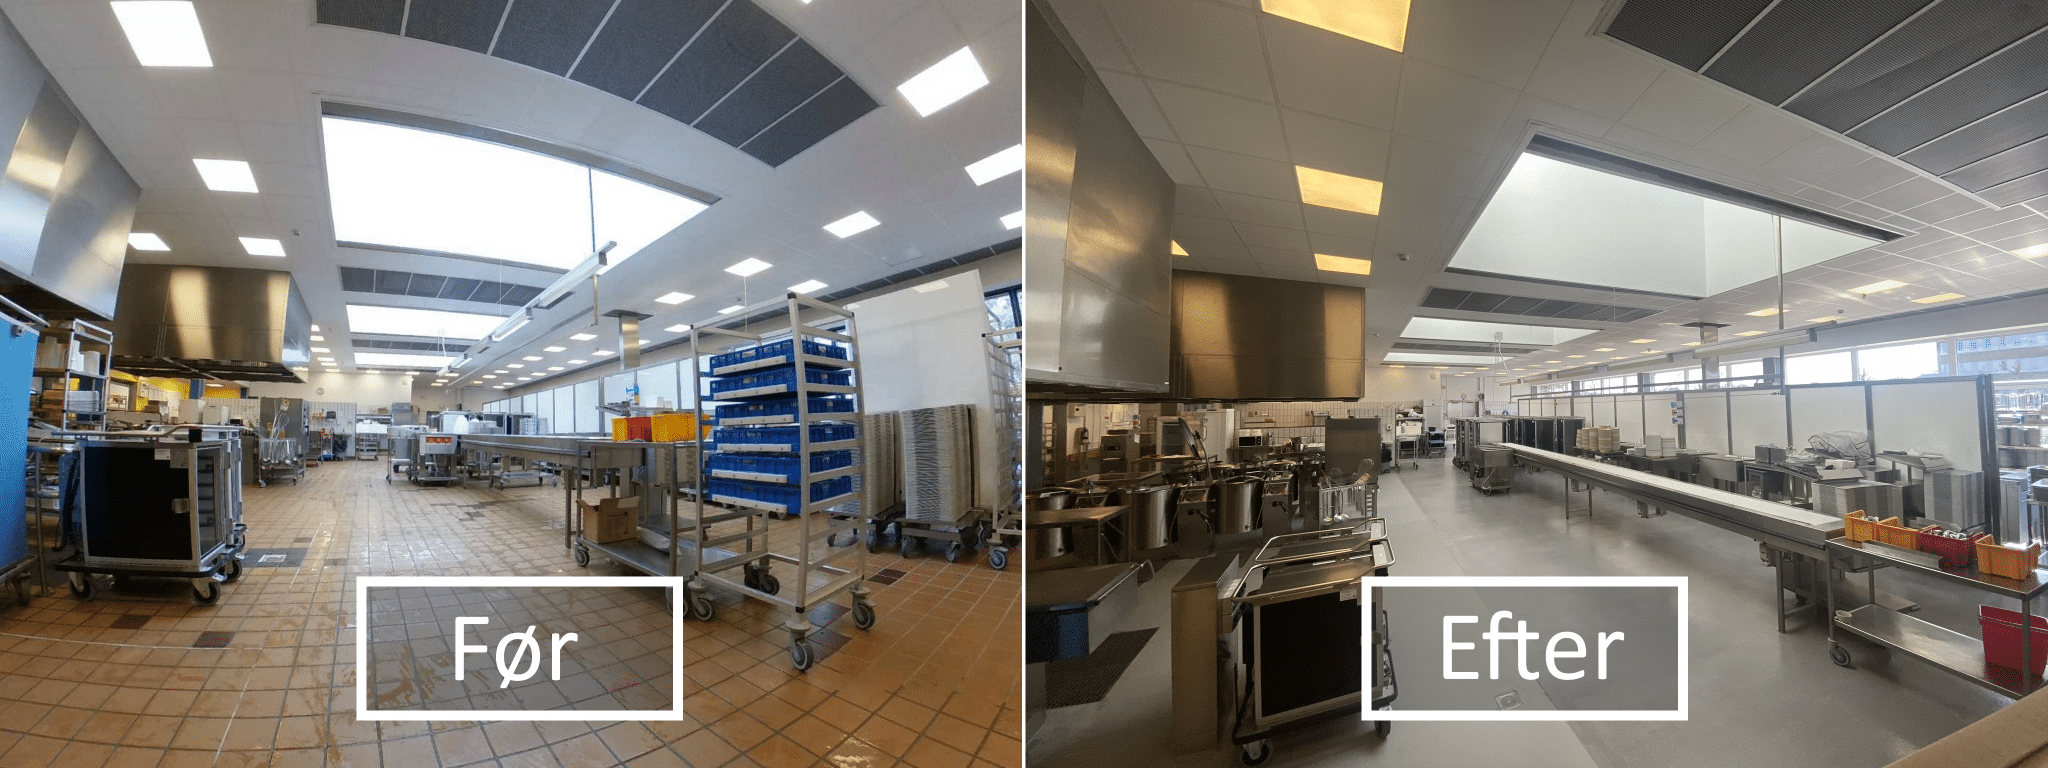 Renovering af køkkengulve på Bornholms Hospital